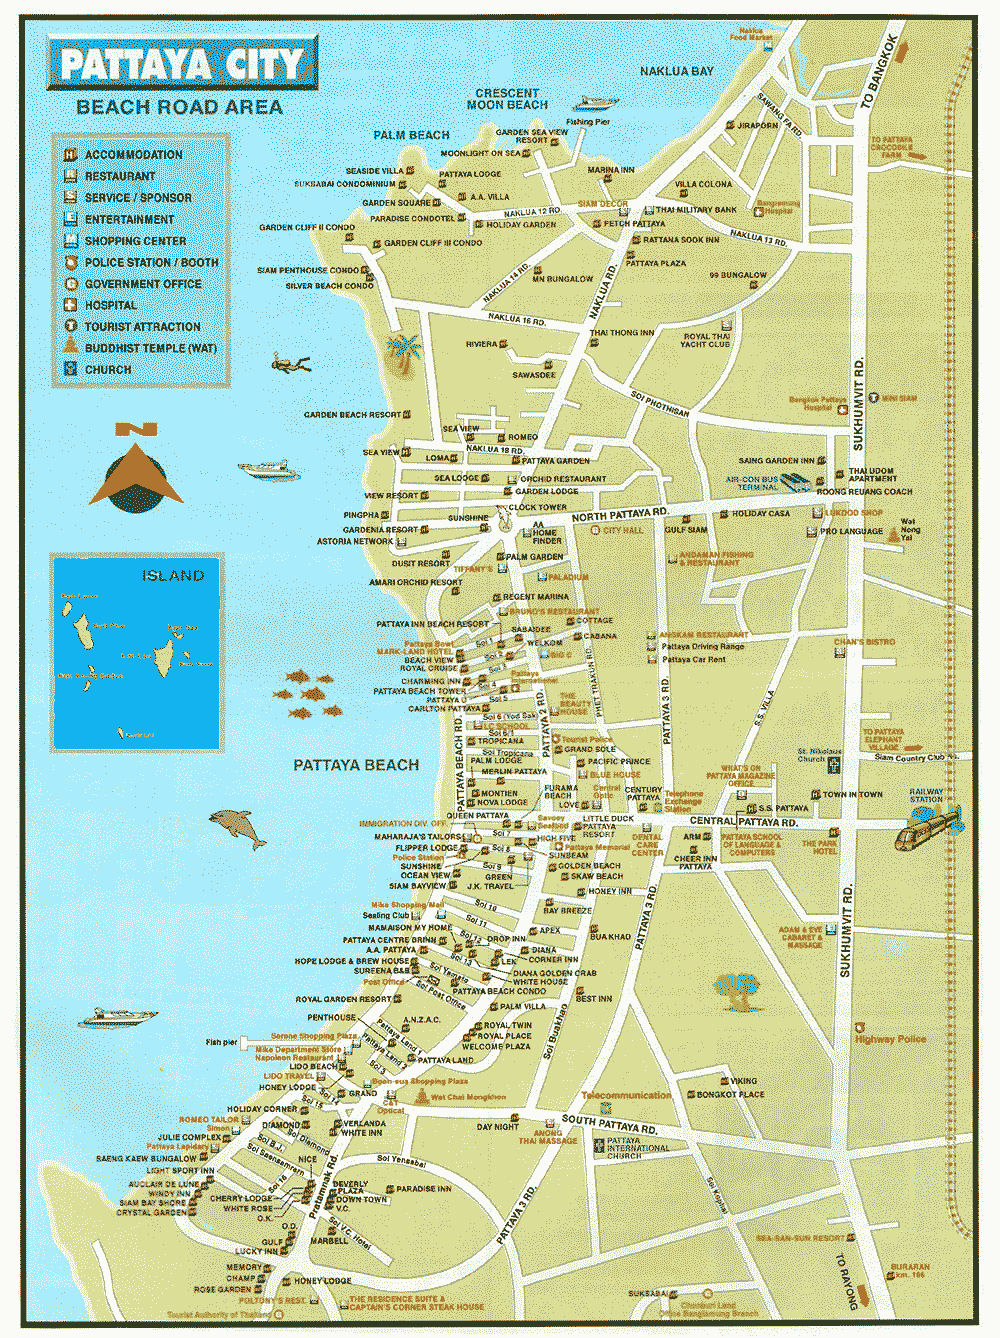 map of pattaya 1 Map of Pattaya